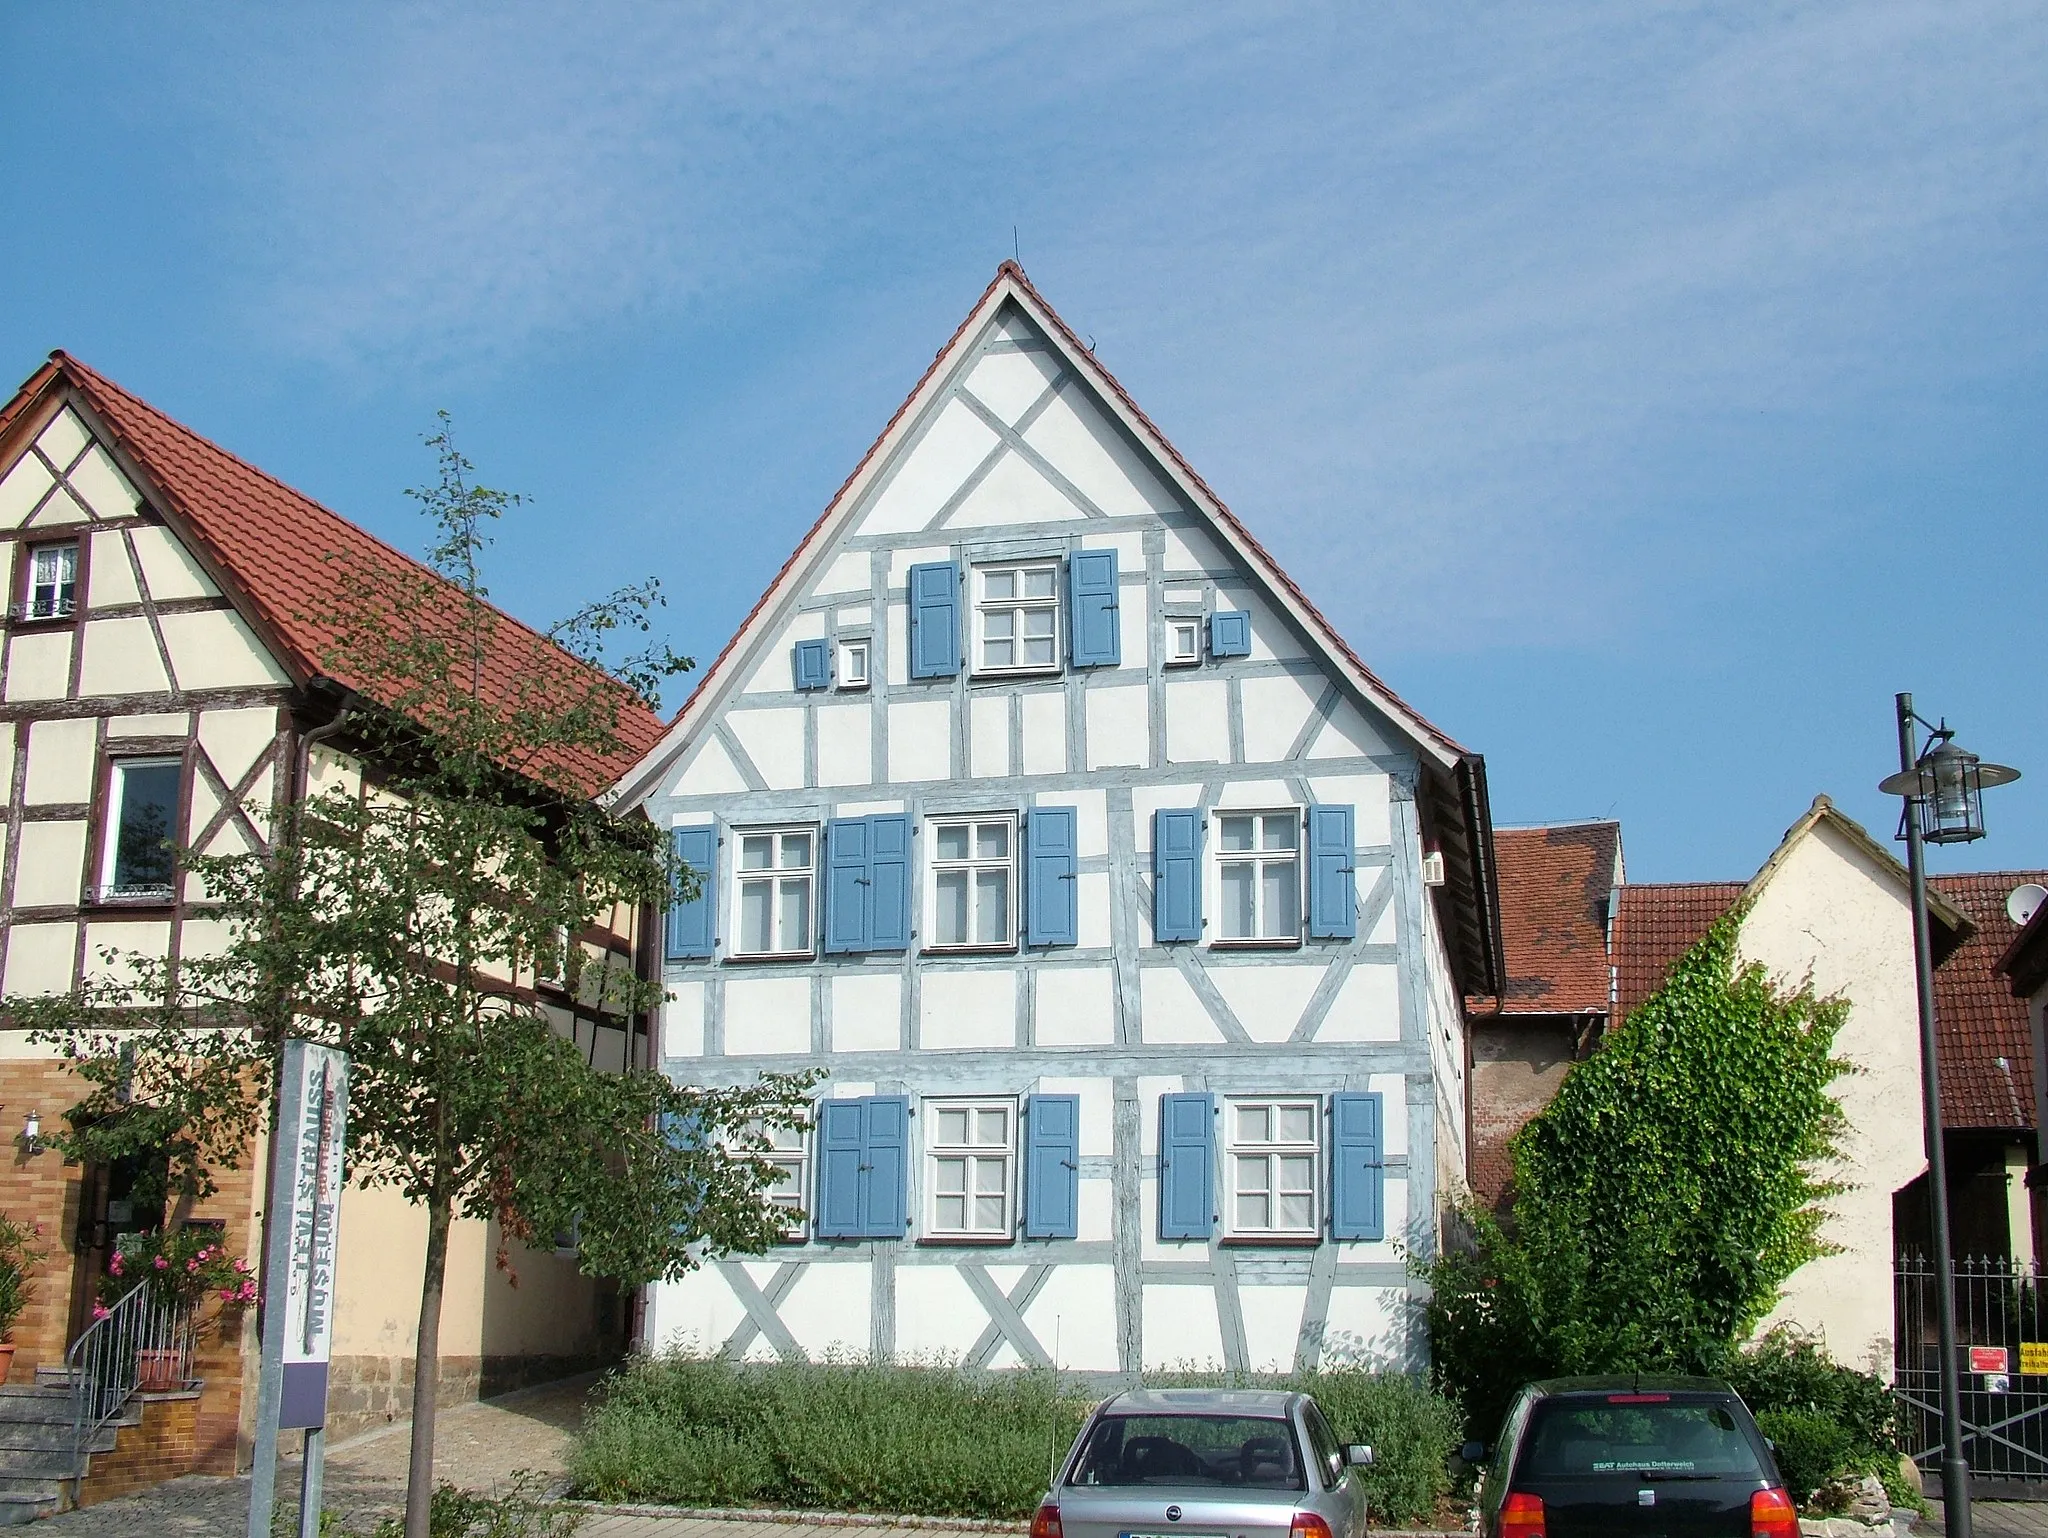 Obrázek Oberfranken